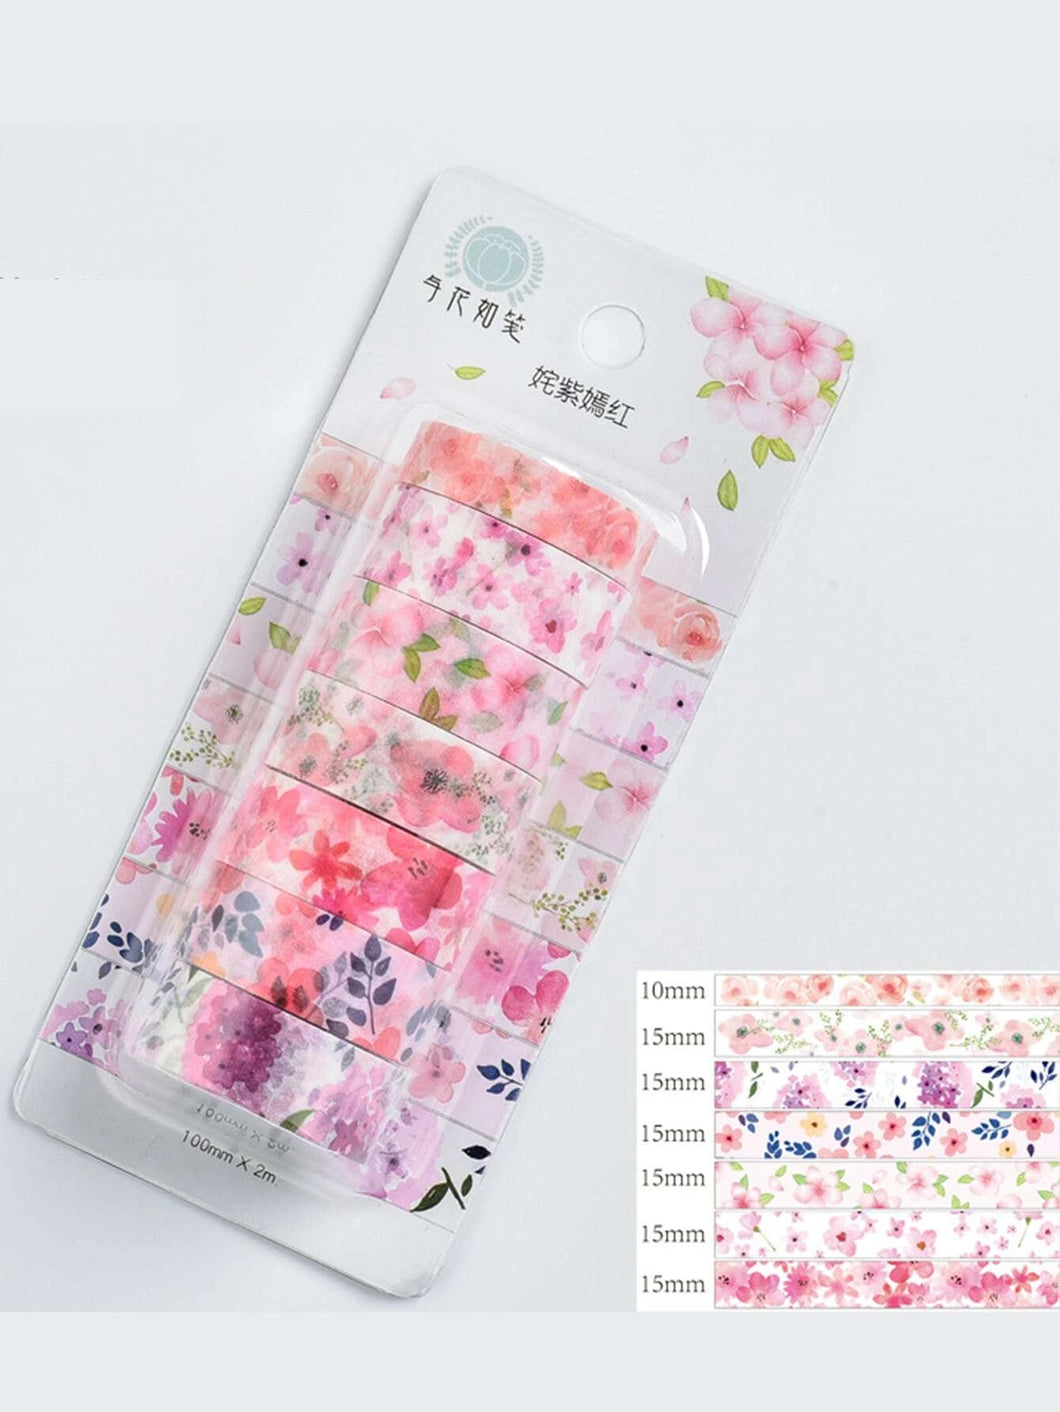 Floral Bouquet Washi Tape 7pcs set